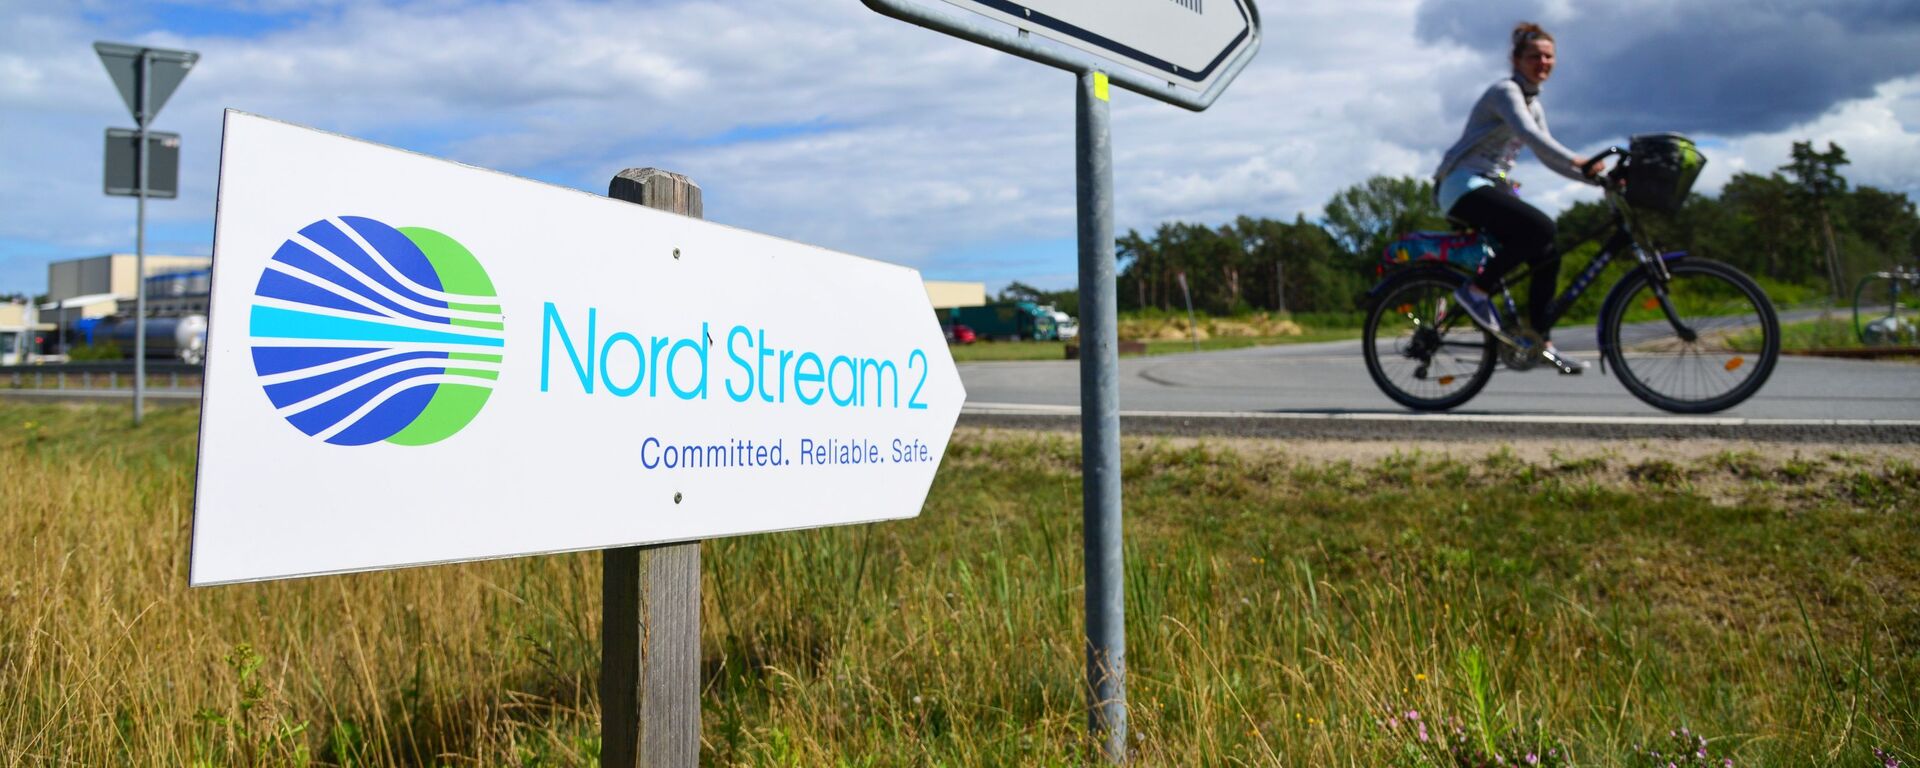 Una señal de Nord Stream 2 en Alemania - Sputnik Mundo, 1920, 10.09.2021